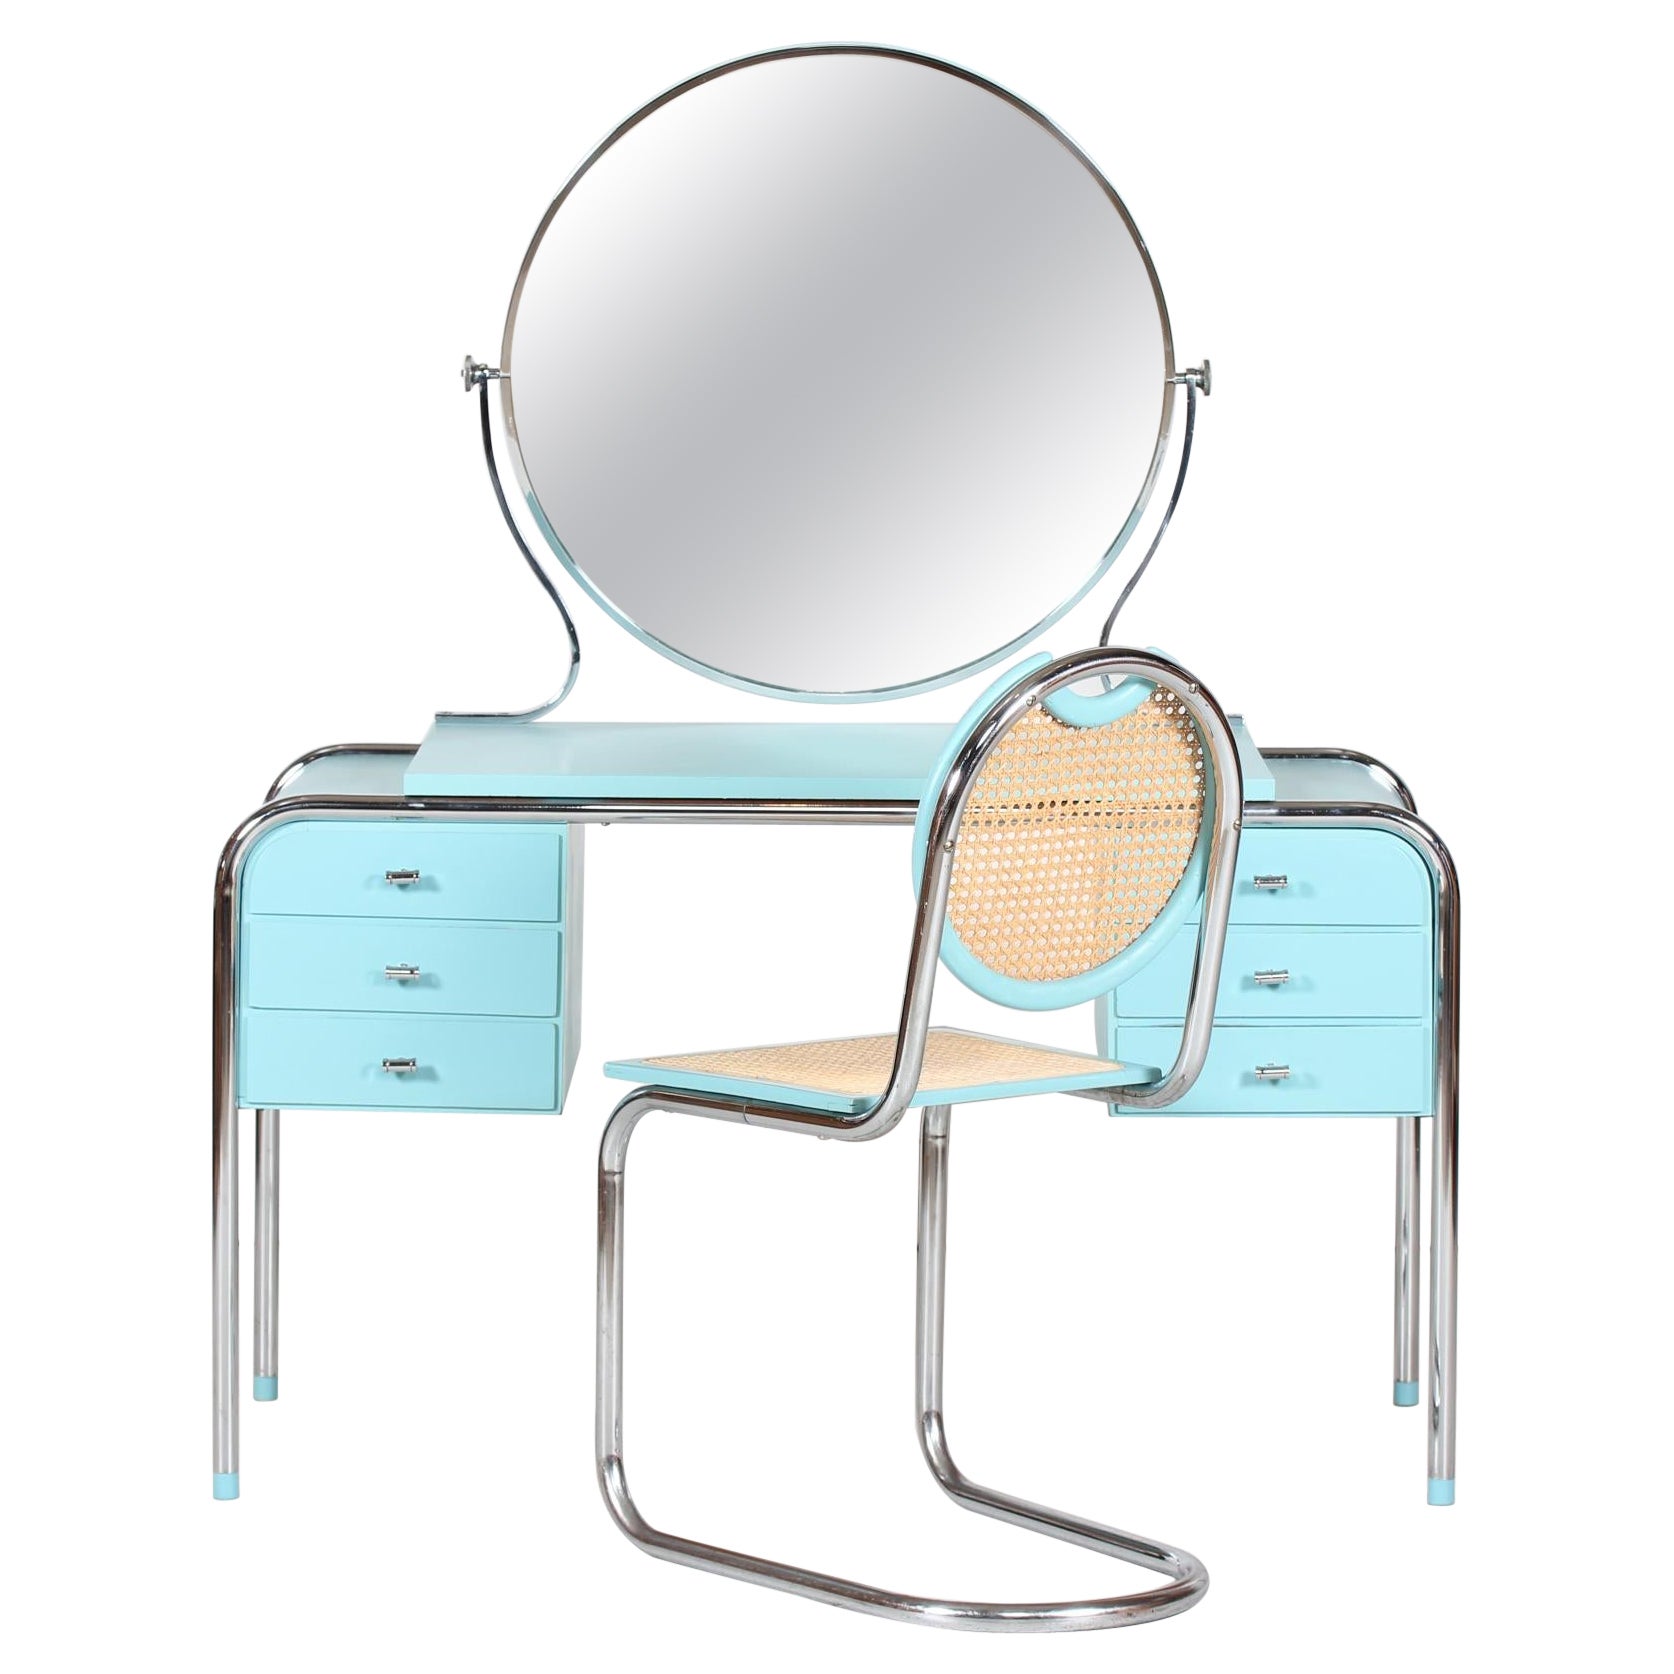 Kommodentisch im Art déco-Stil mit rundem Spiegel und Stuhl, dänischer Schreiner, 1930er Jahre